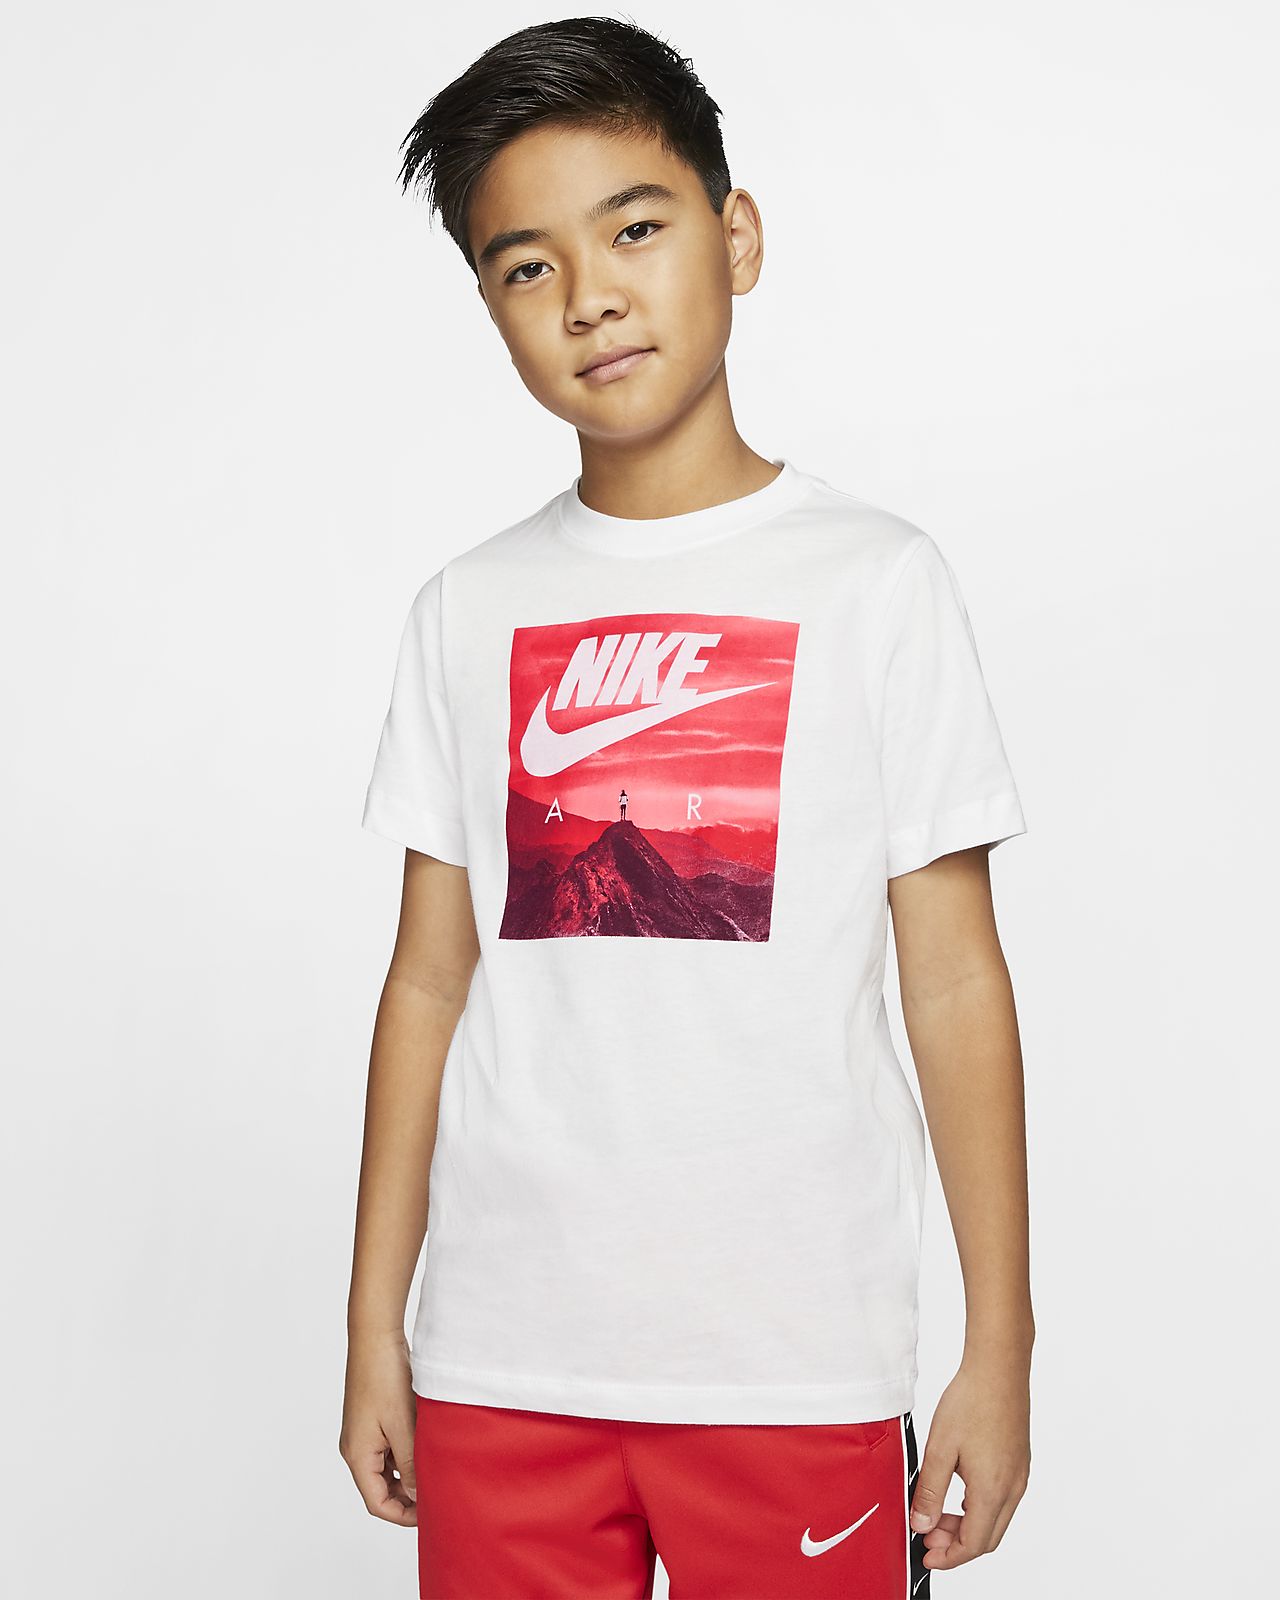 Nike Air Older Kids' (Boys') T-Shirt 